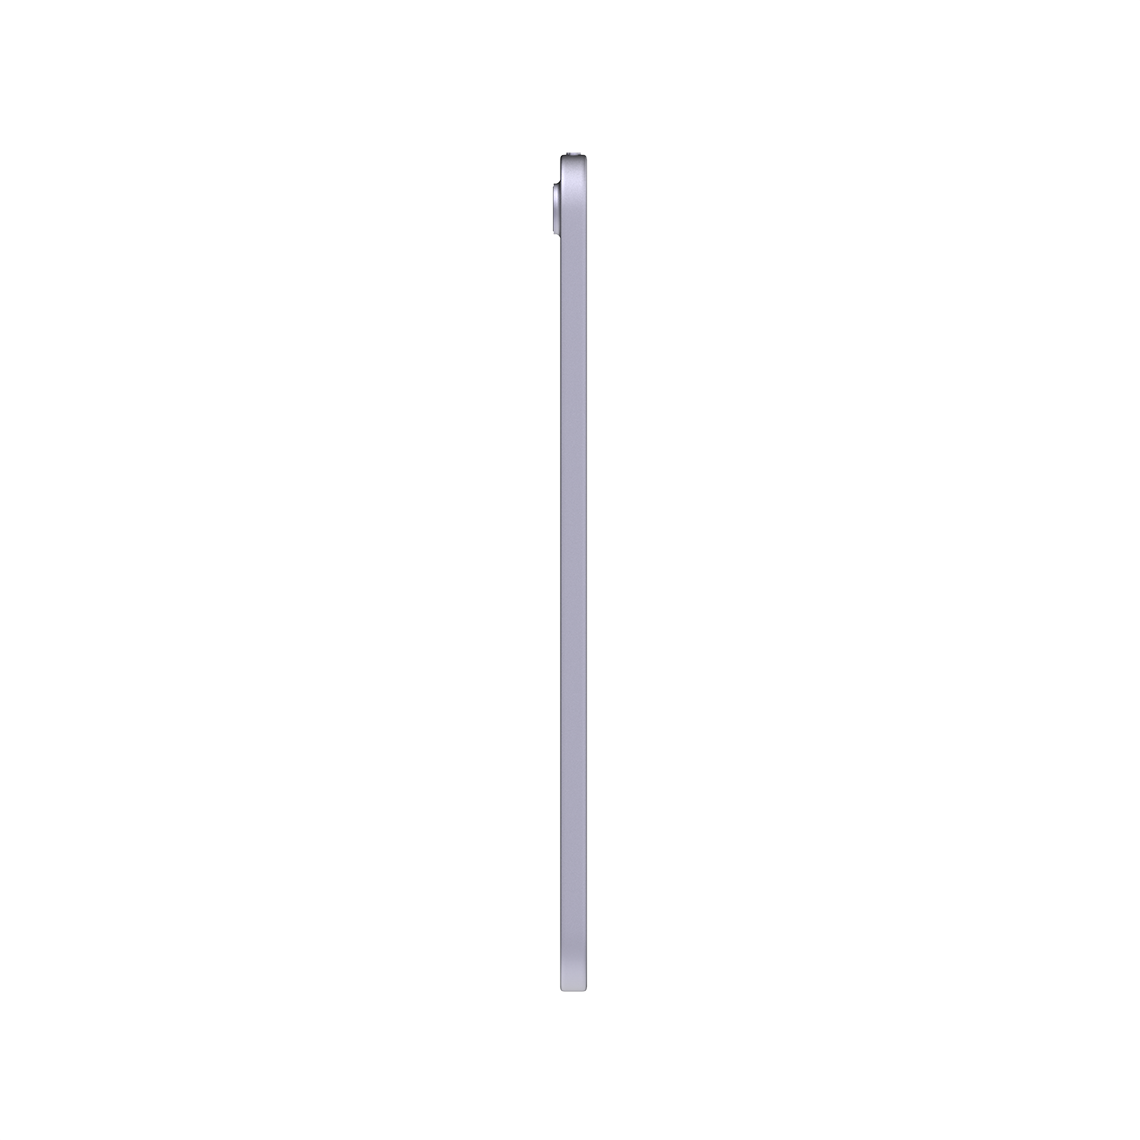 Apple iPad Mini 8.3-inch 6th Generation - Purple - 64GB, Wi-Fi, Grade B